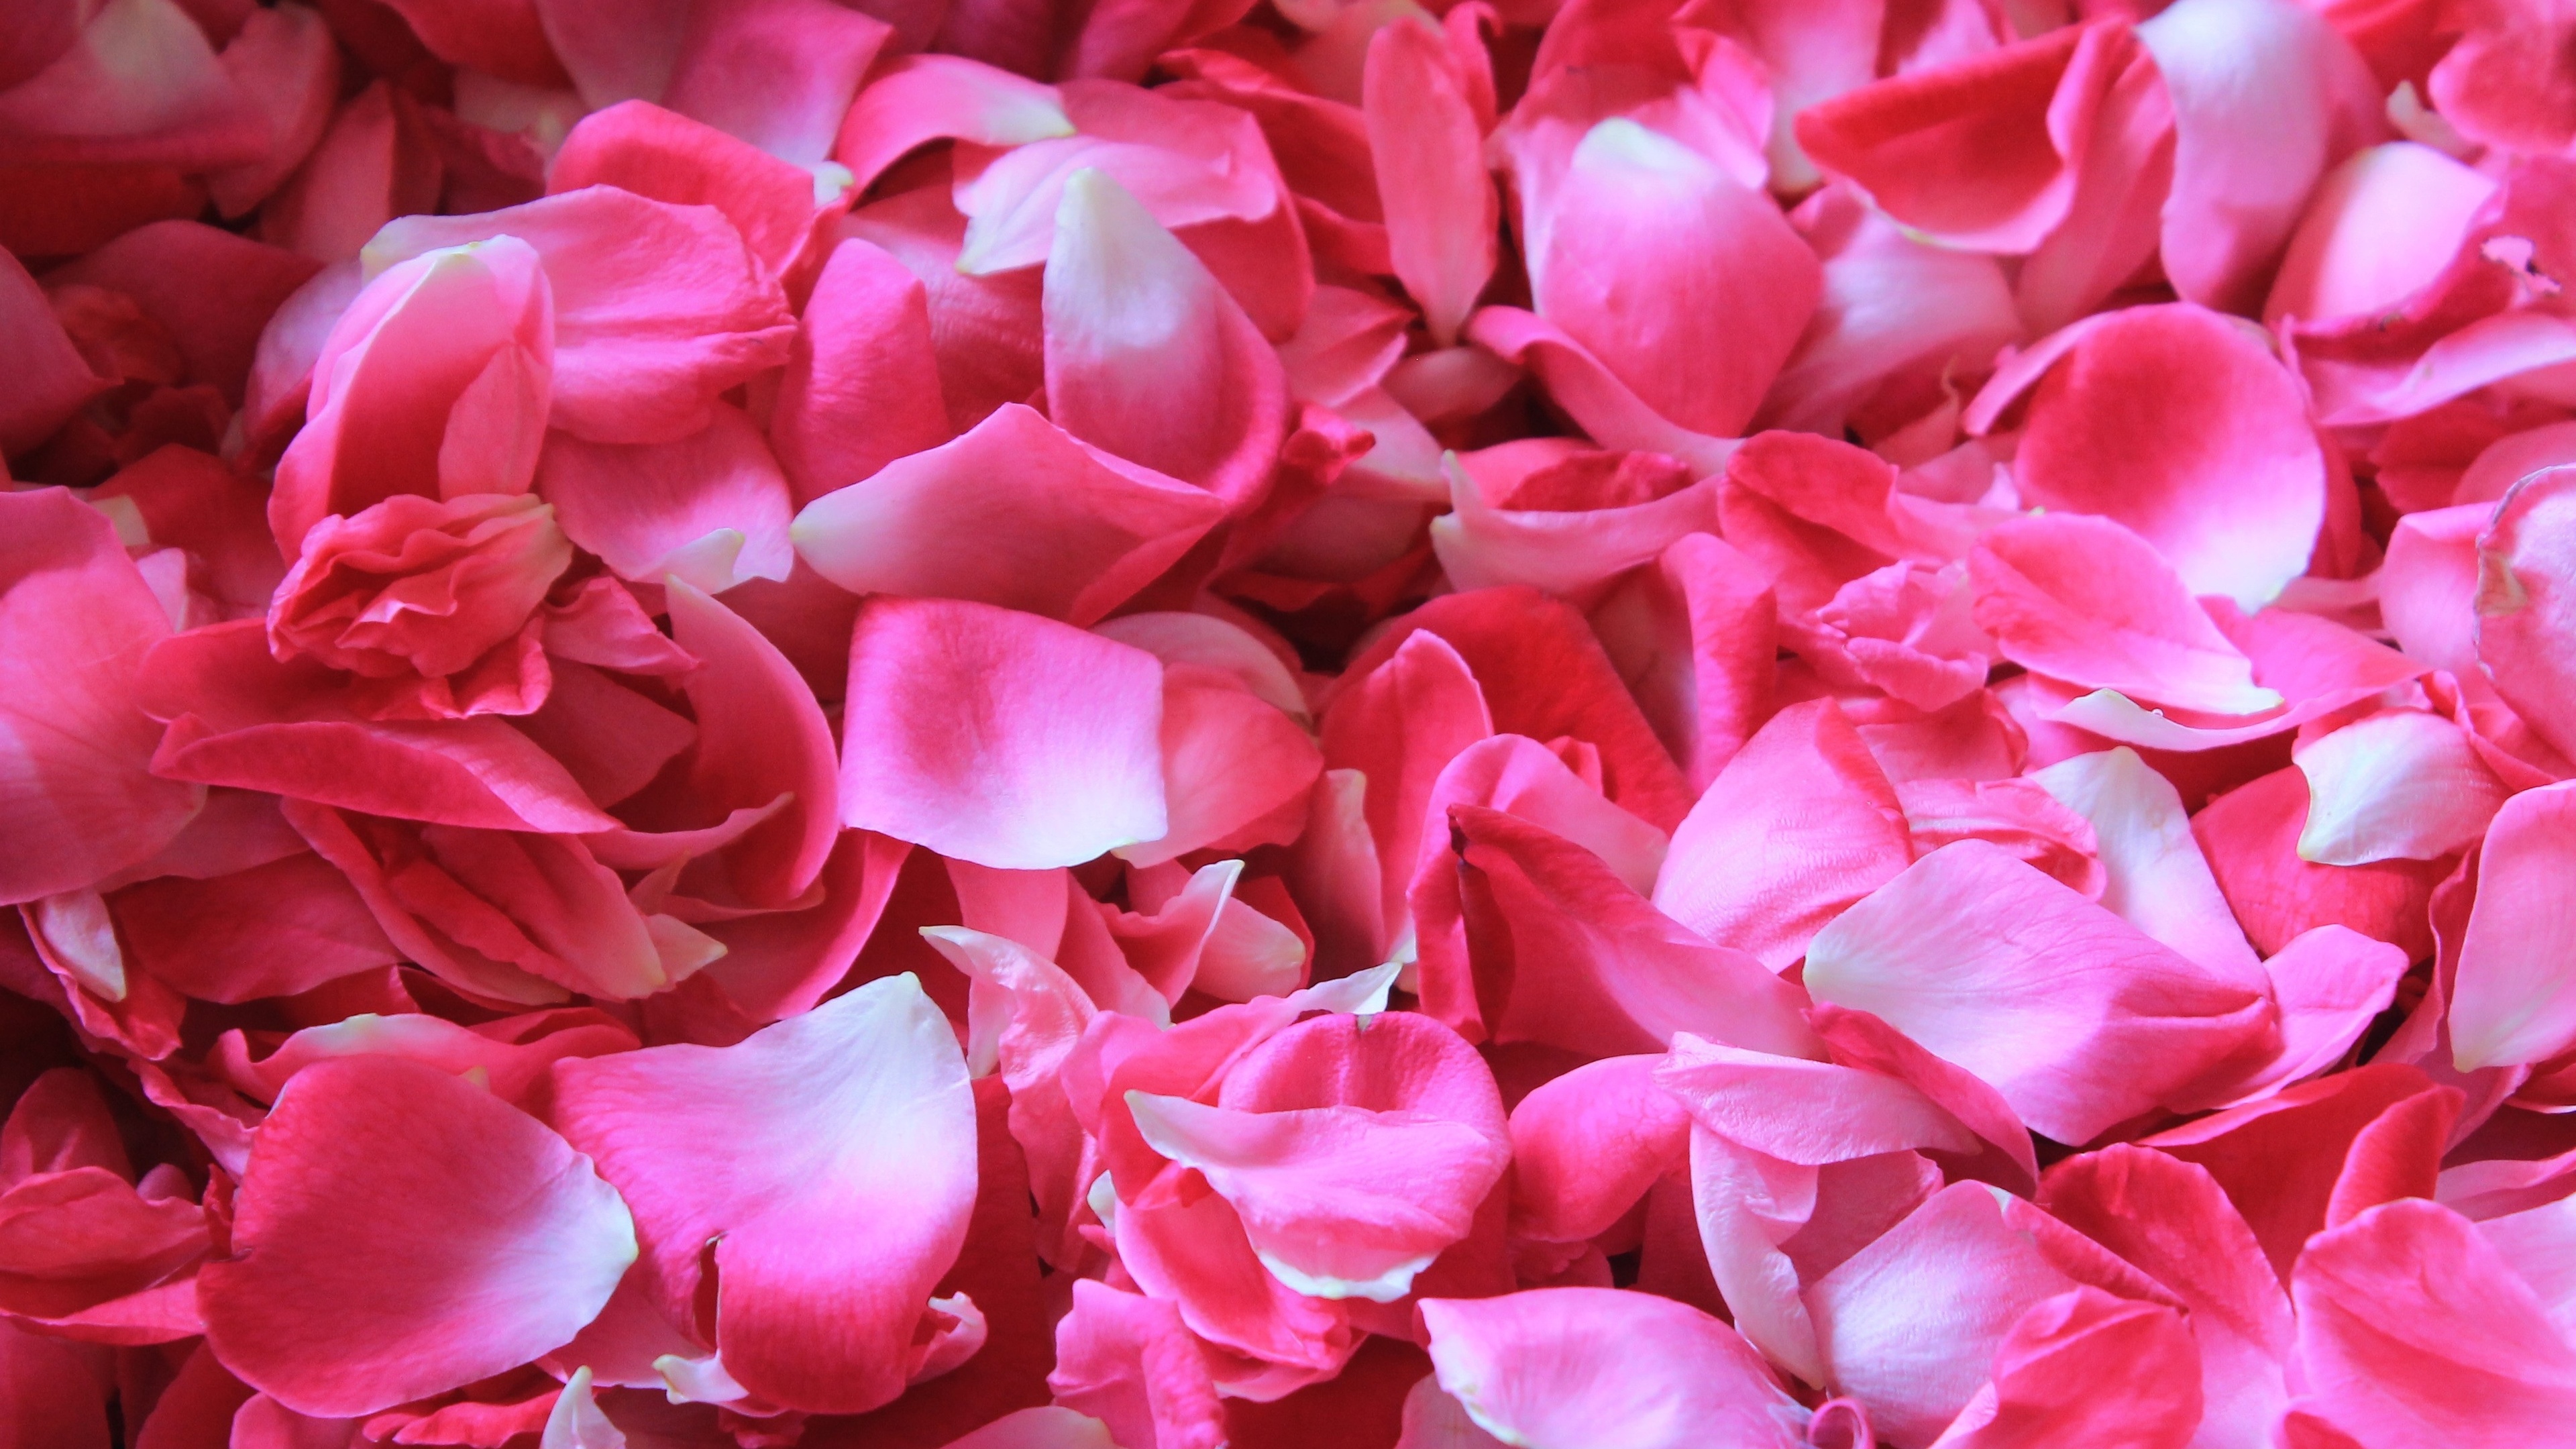 缤纷多彩一堆粉色的玫瑰花瓣4k背景图片壁纸